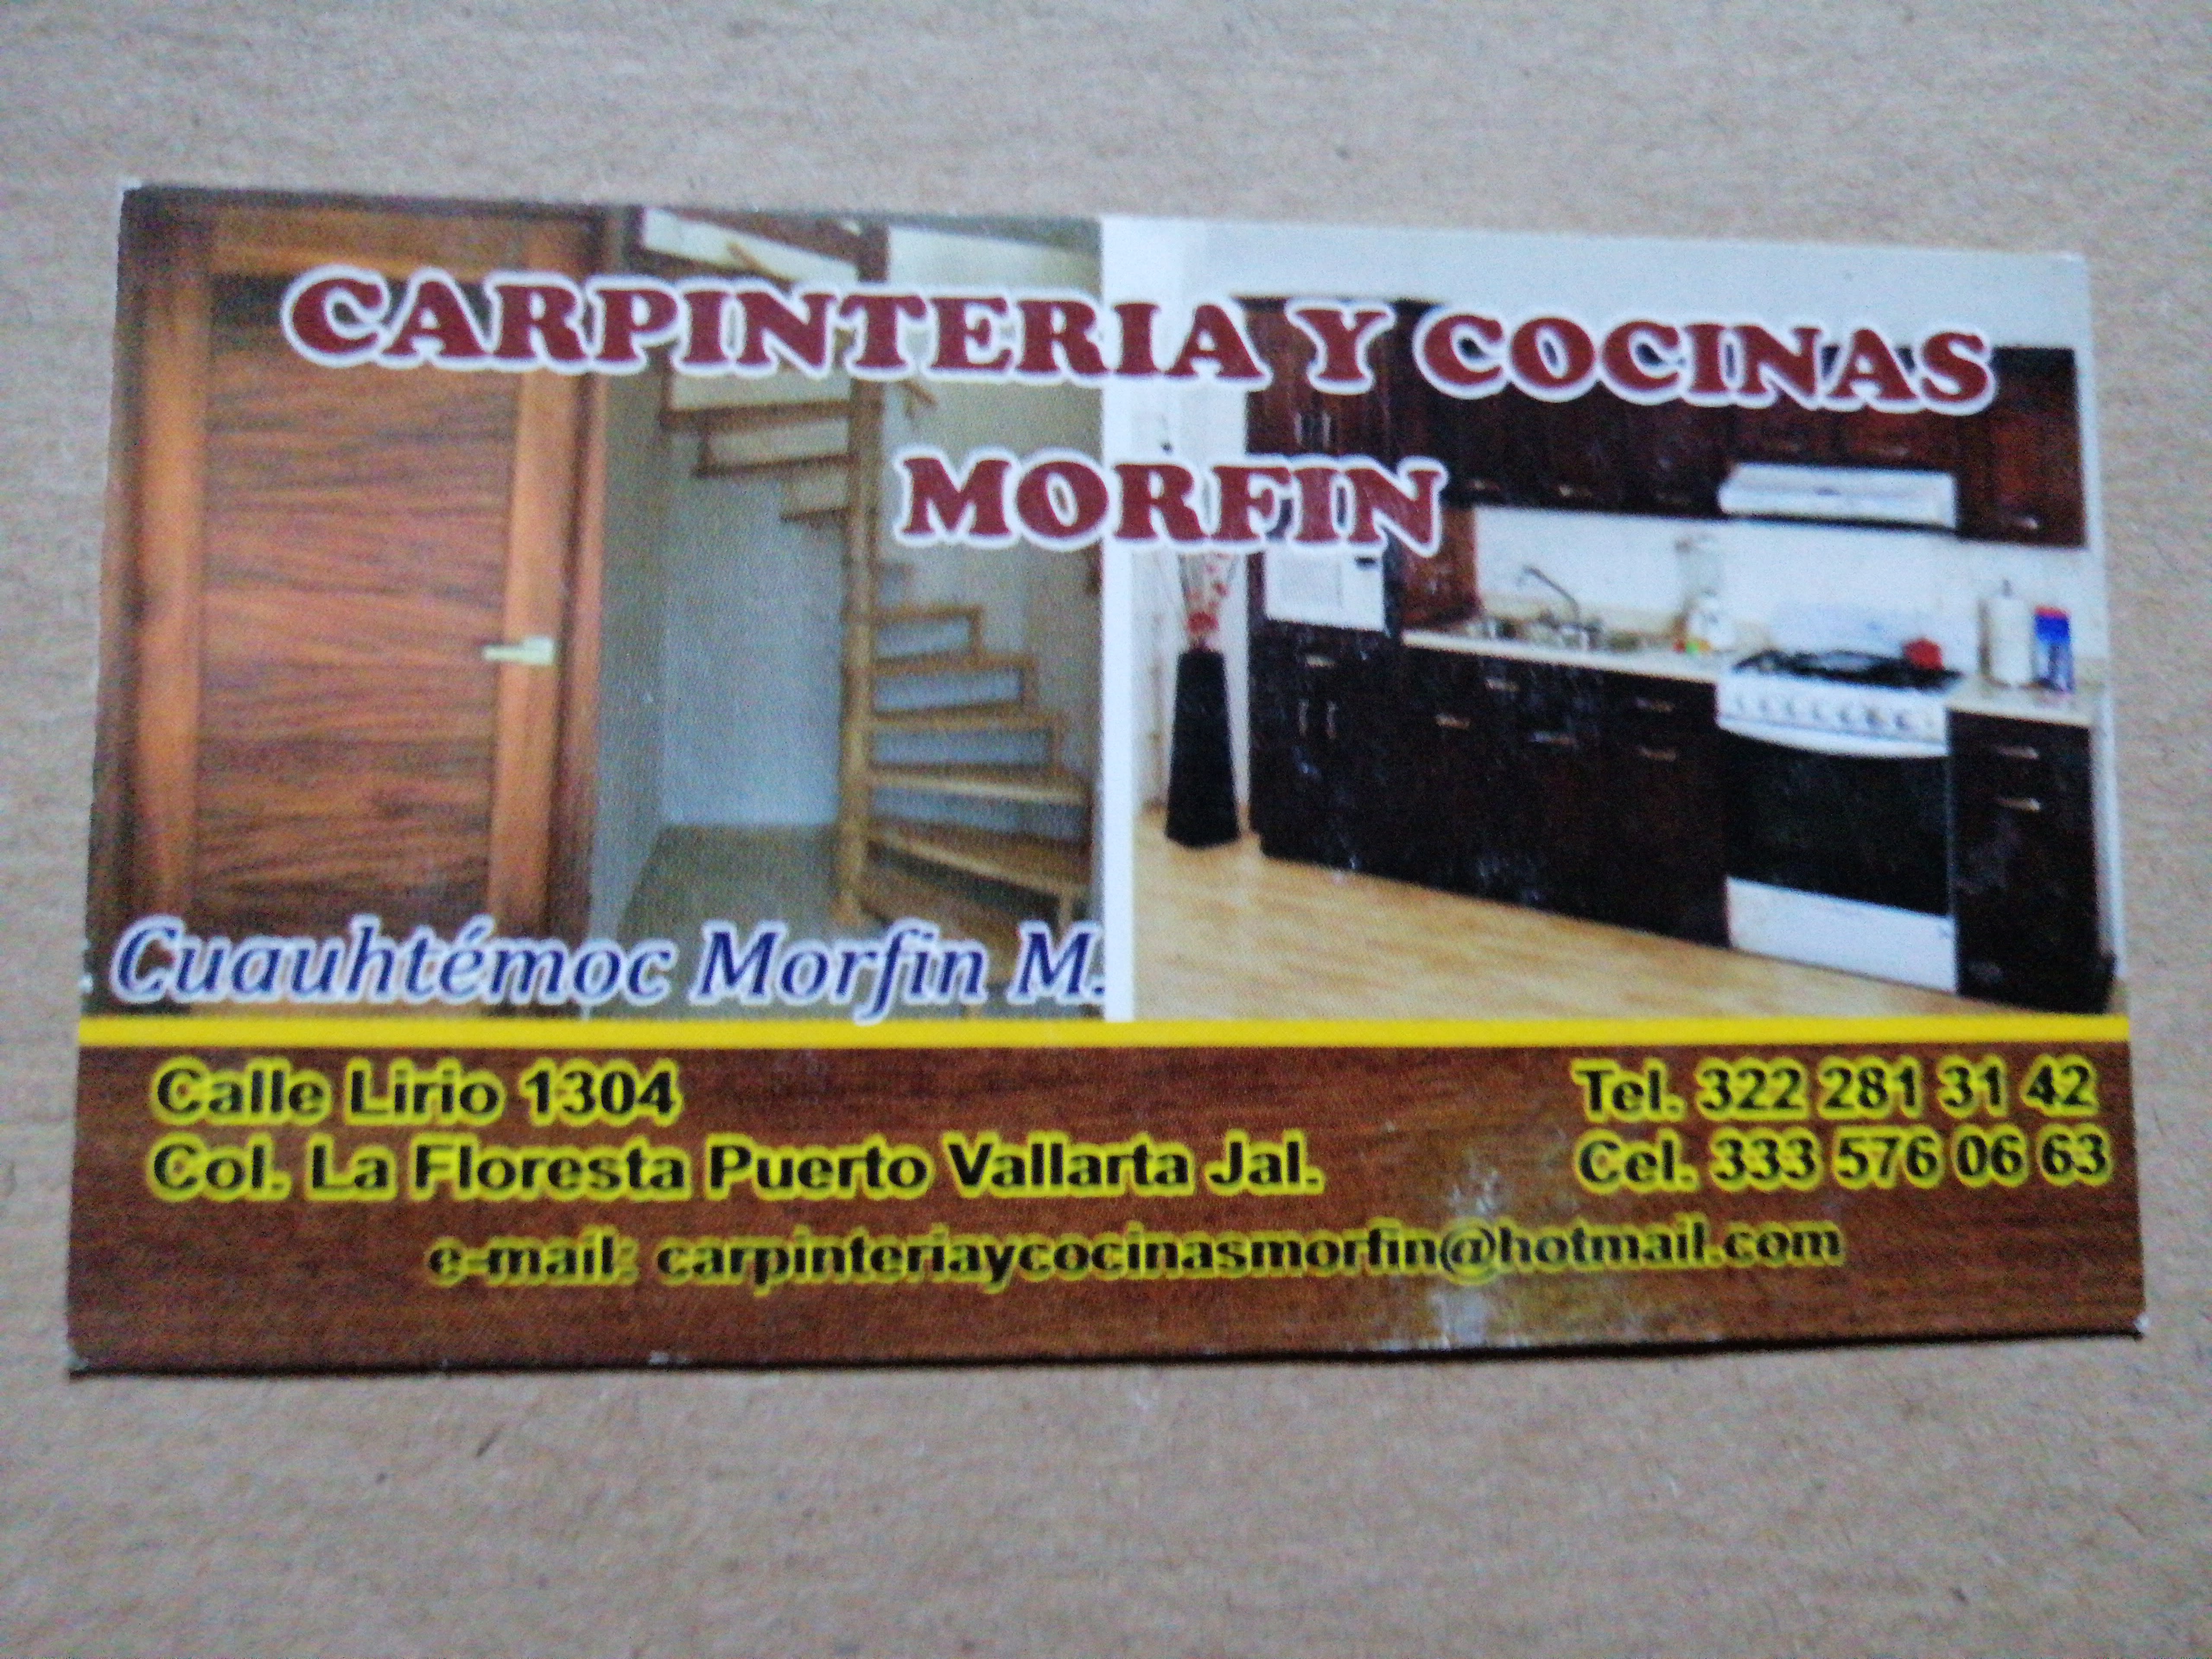 Carpintería y Cocinas Morfin